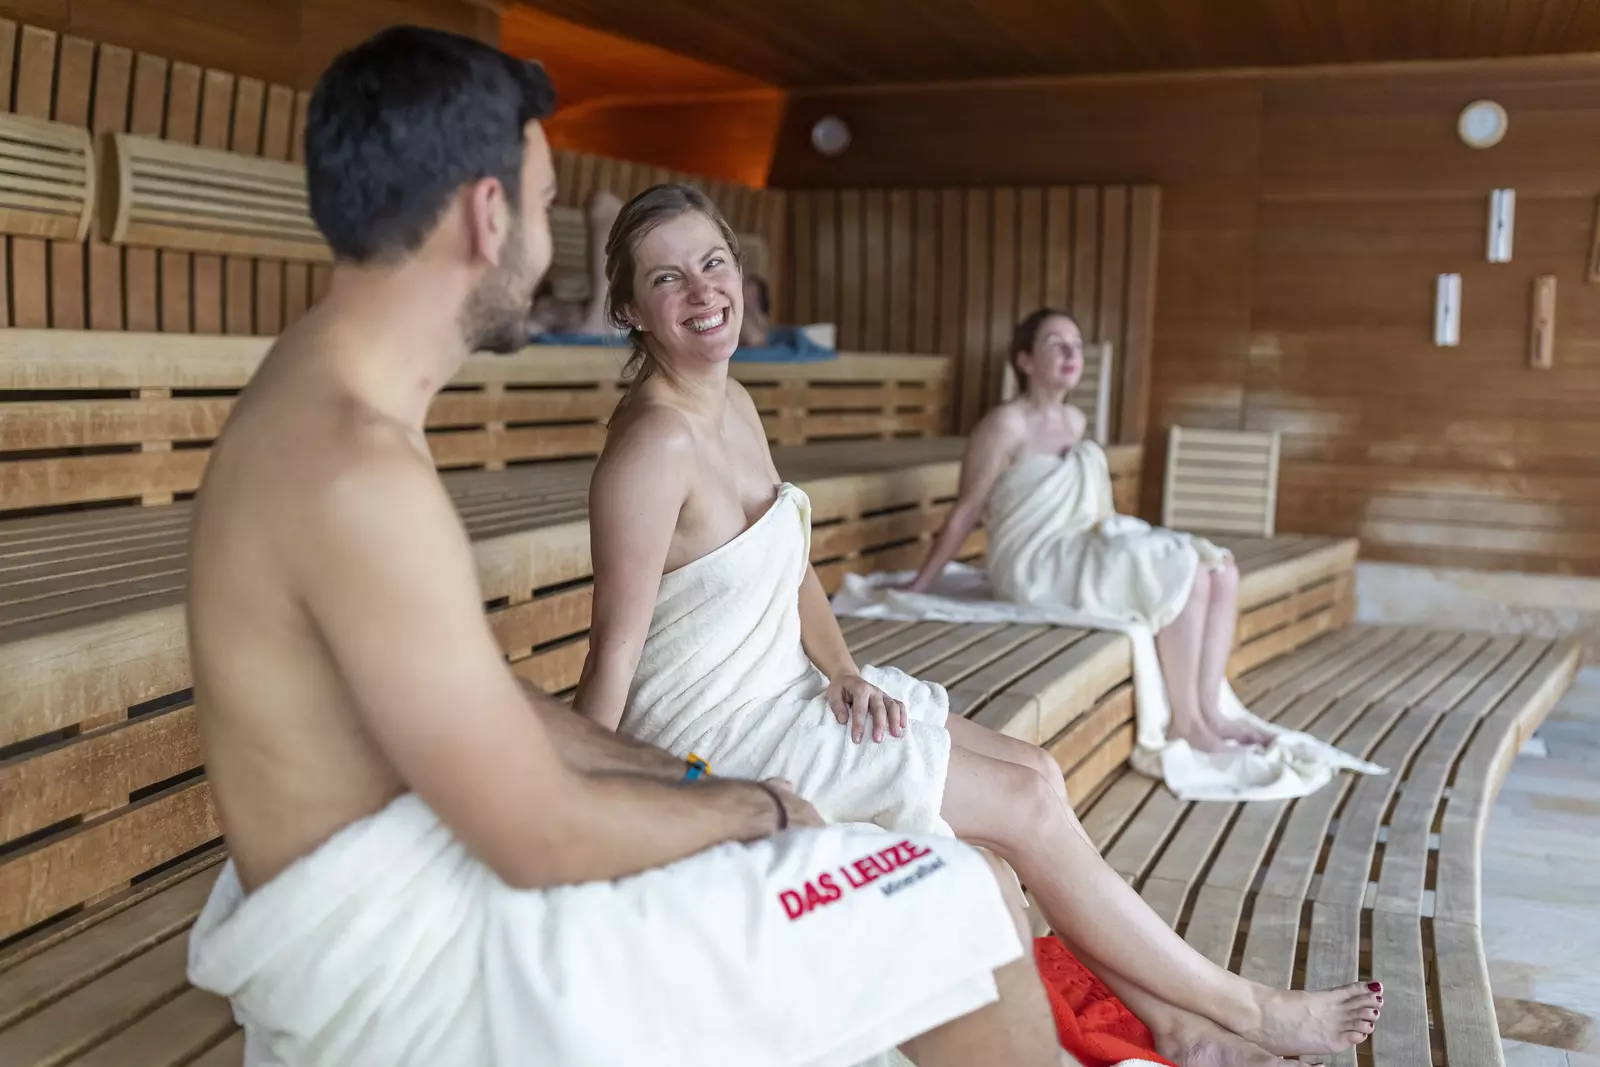 Ein Paar, in Badetücher gehüllt sitzt auf einer Holzbank in der Panorama-Sauna und unterhält sich entspannt und fröhlich.